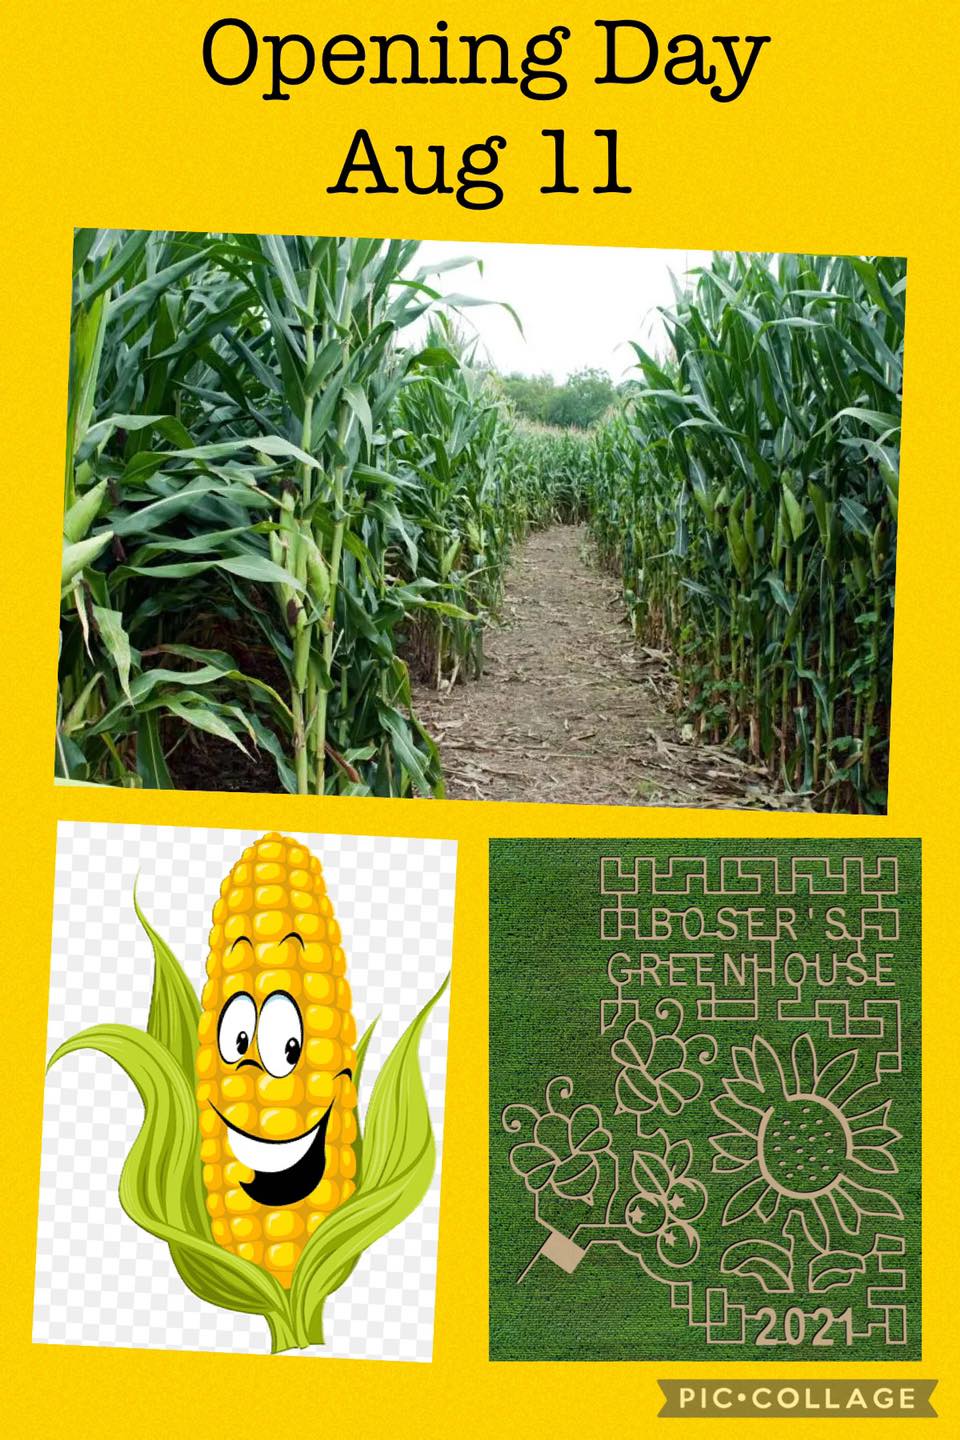 bosers greenhouse corn maze